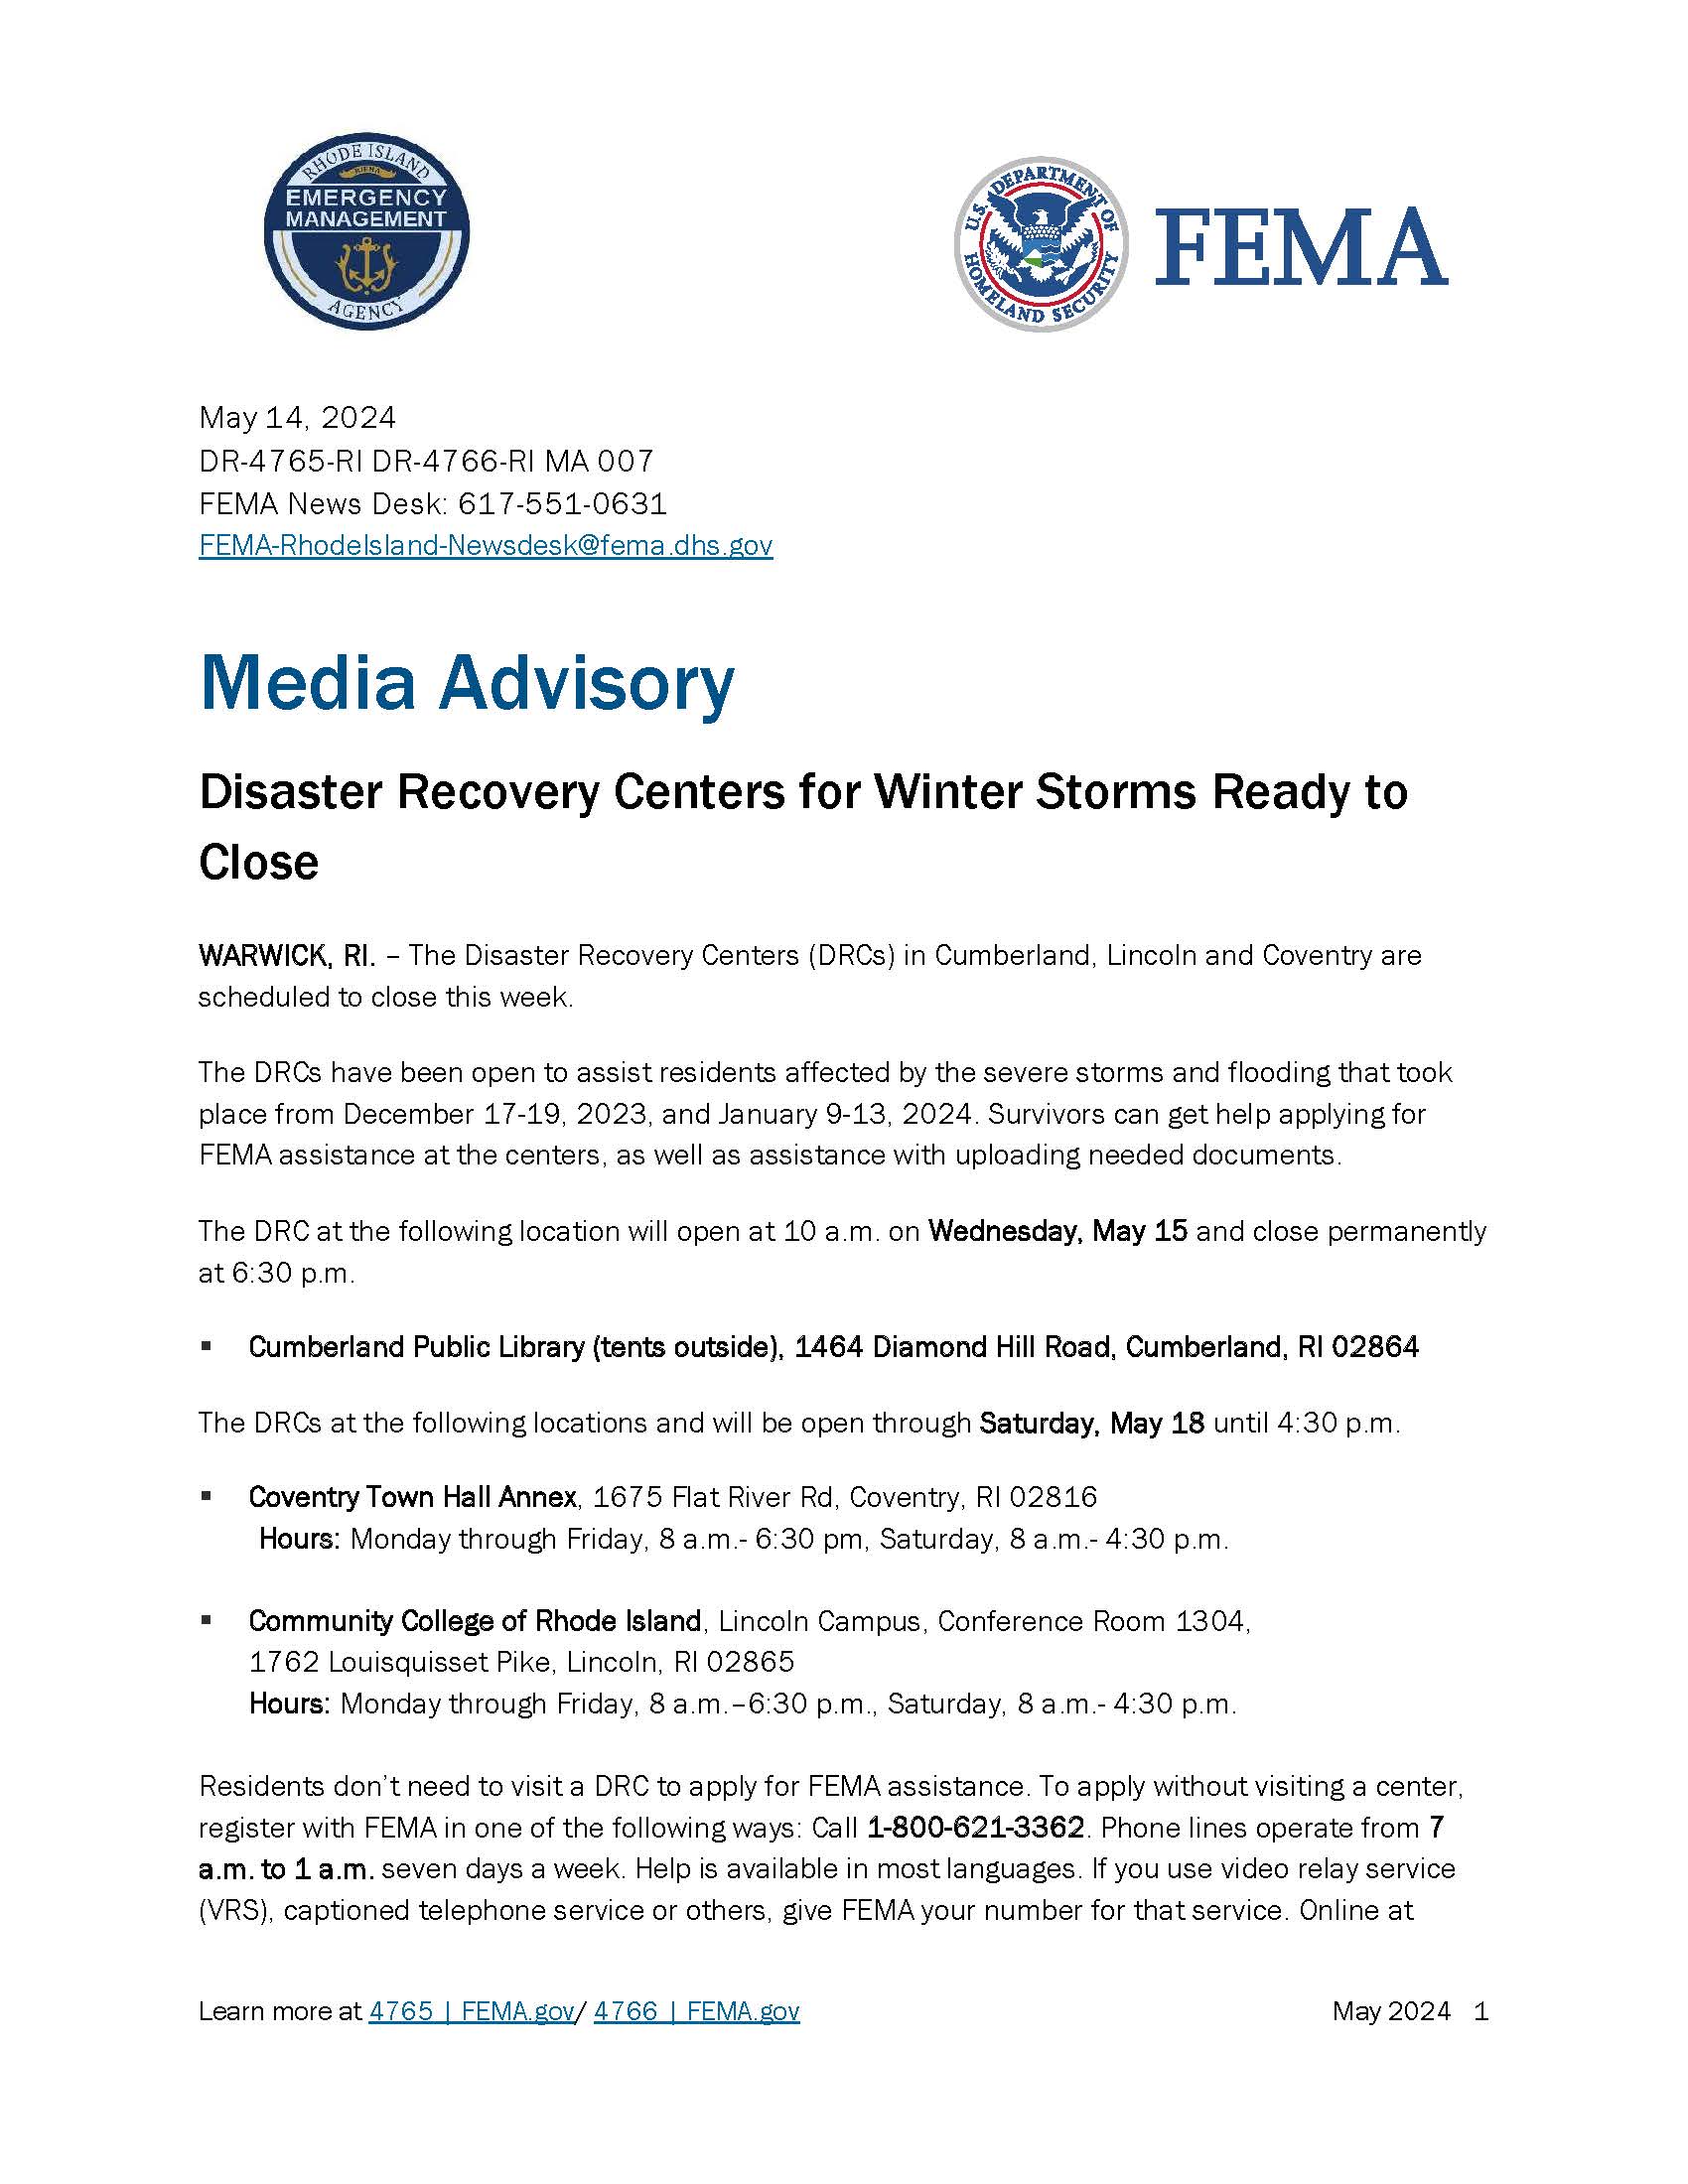 FEMA center closing